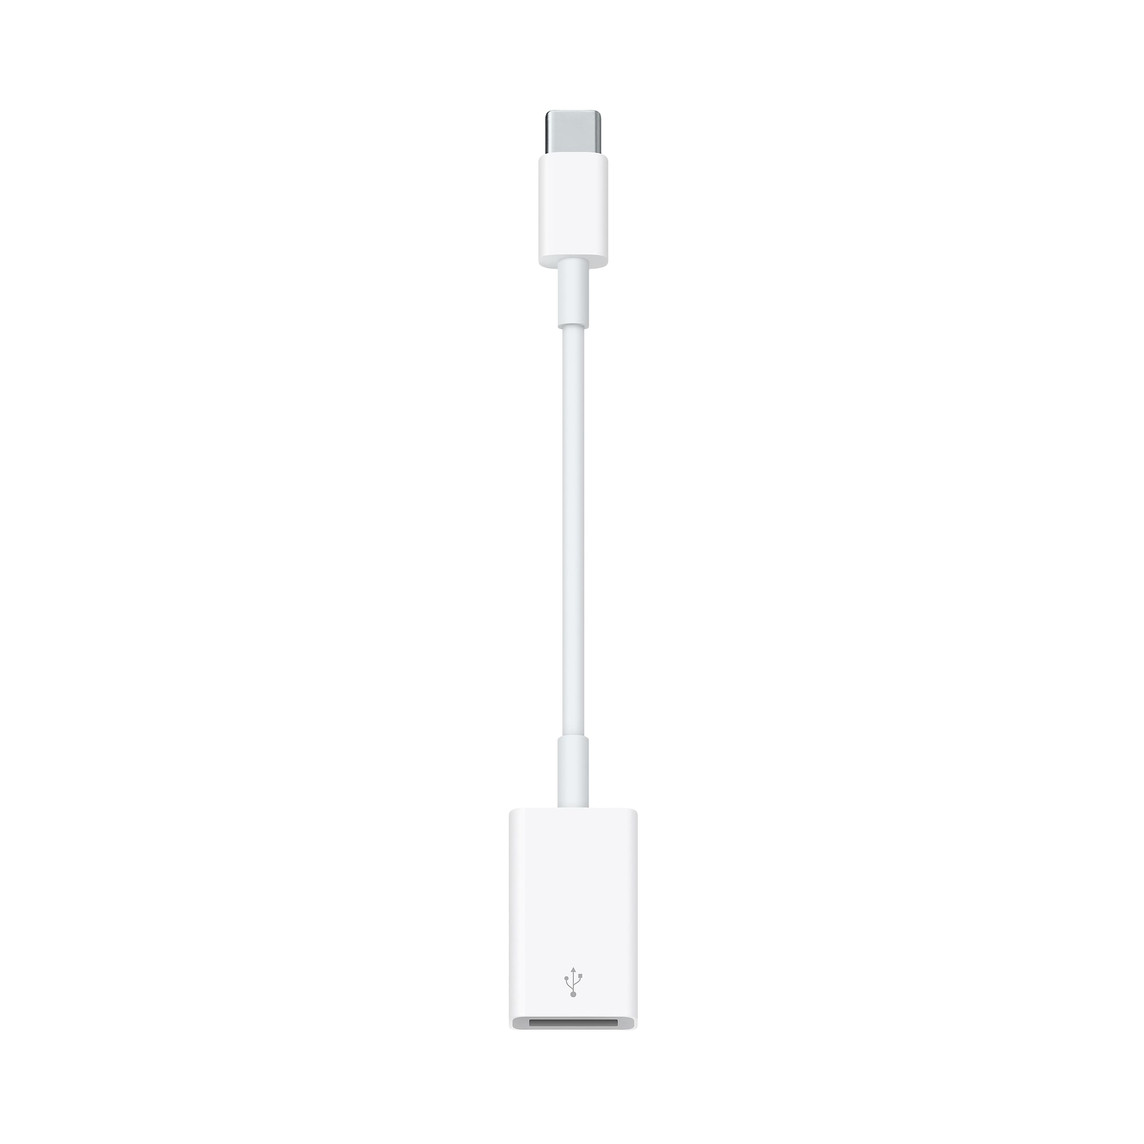 Med USB-C til USB-mellemstikket kan du slutte iOS-enheder og almindeligt USB-tilbehør til en Mac med USB-C- eller Thunderbolt 3-port (USB-C).